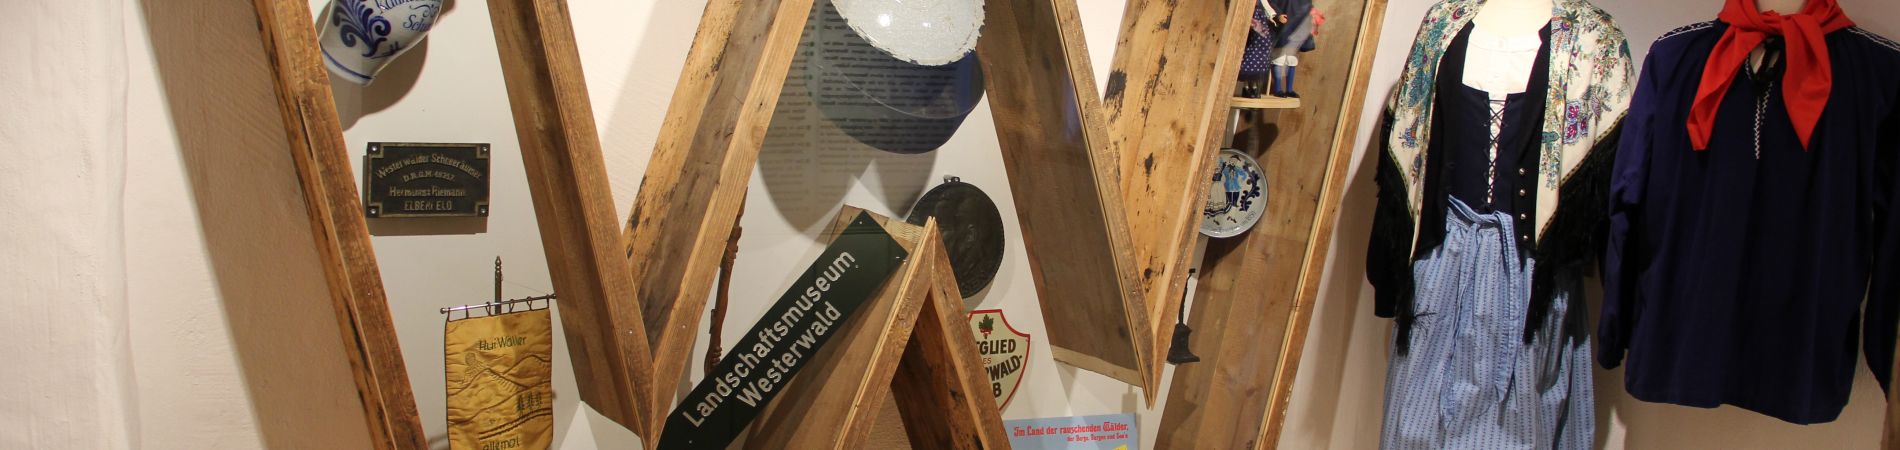 Neuer Dauerausstellungsbereich zur Geschichte des Westerwaldes